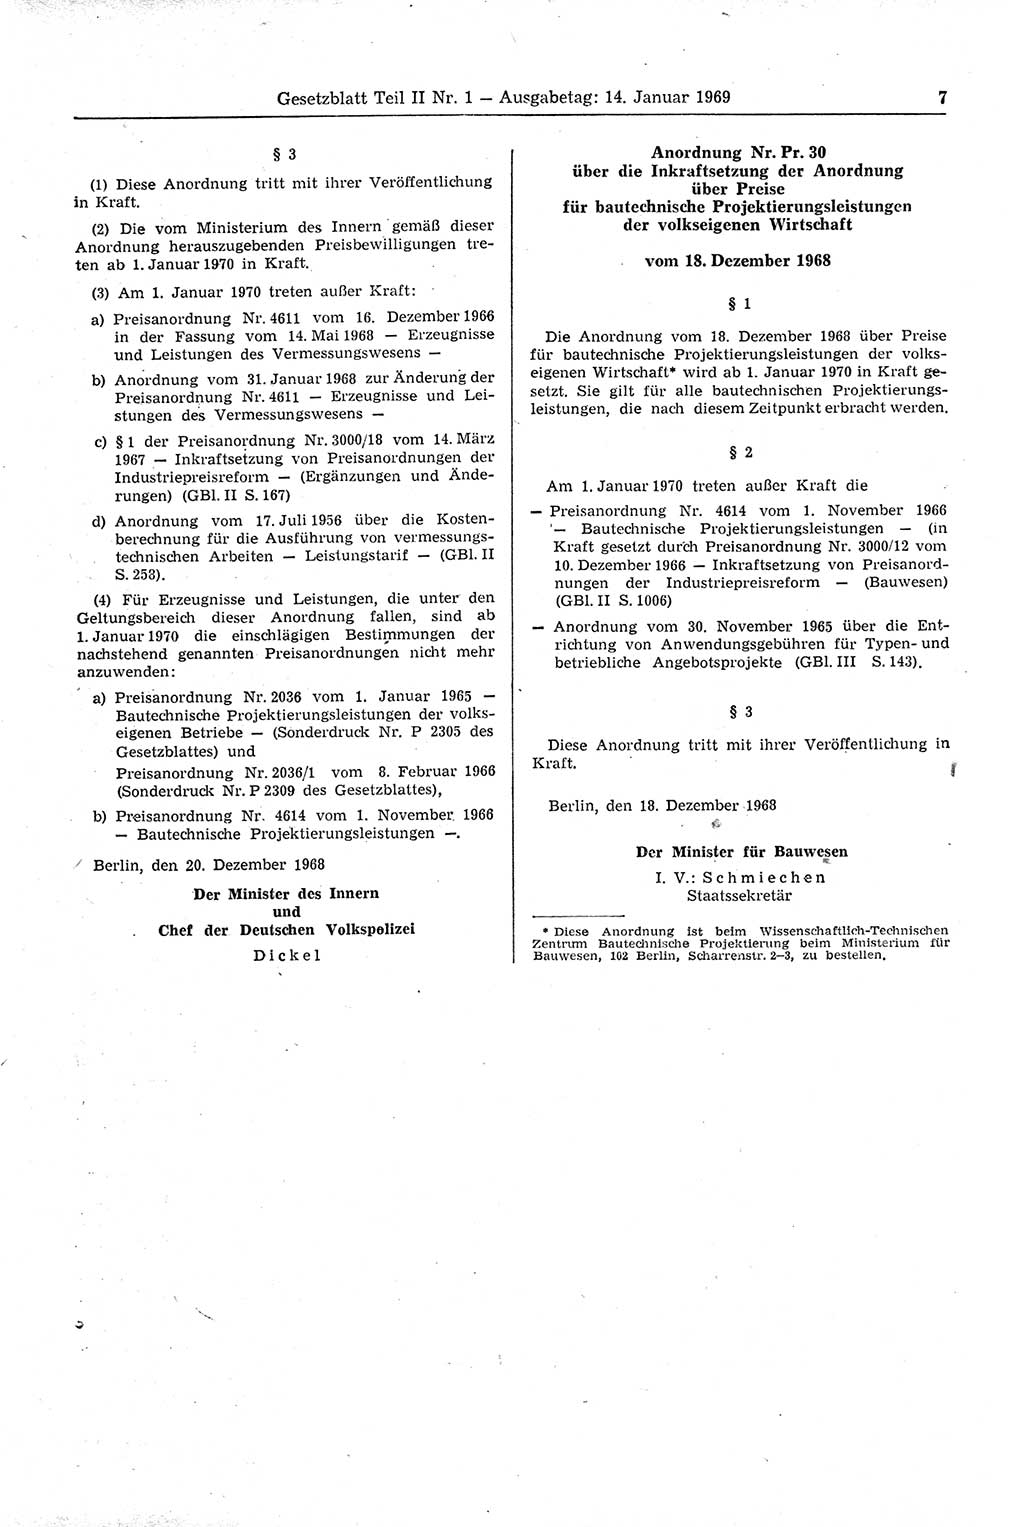 Gesetzblatt (GBl.) der Deutschen Demokratischen Republik (DDR) Teil ⅠⅠ 1969, Seite 7 (GBl. DDR ⅠⅠ 1969, S. 7)